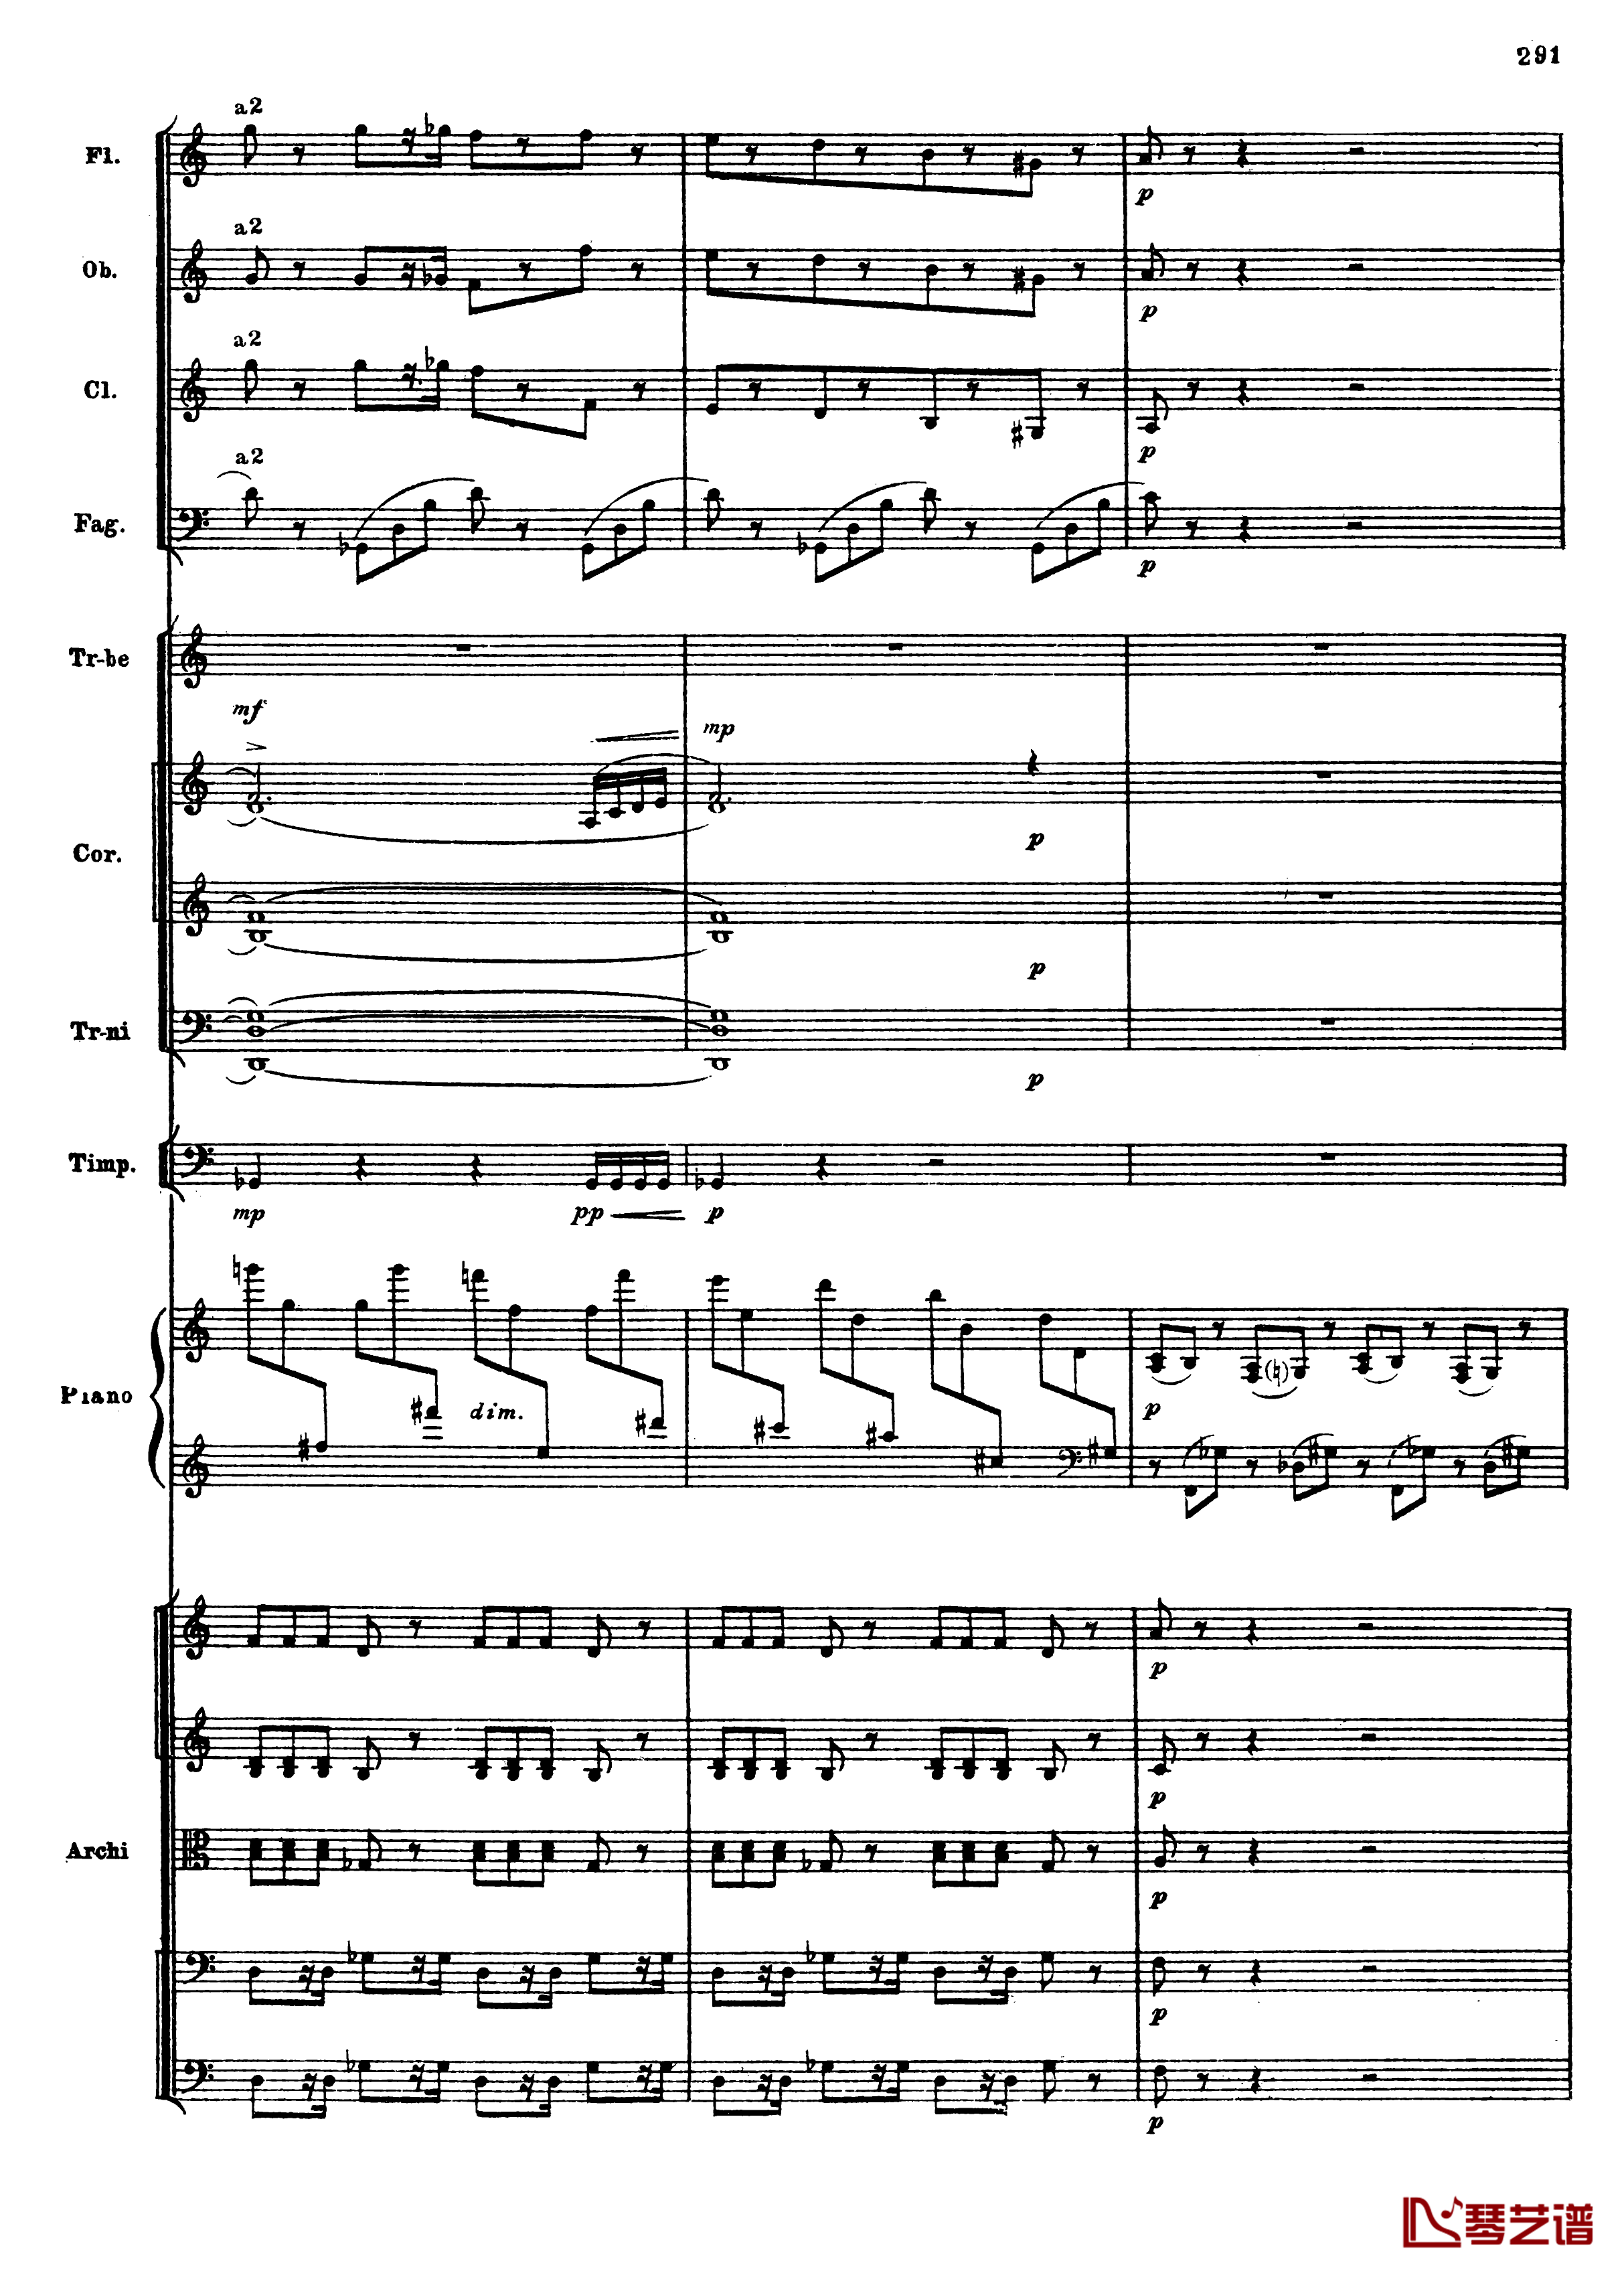 普罗科菲耶夫第三钢琴协奏曲钢琴谱-总谱-普罗科非耶夫23